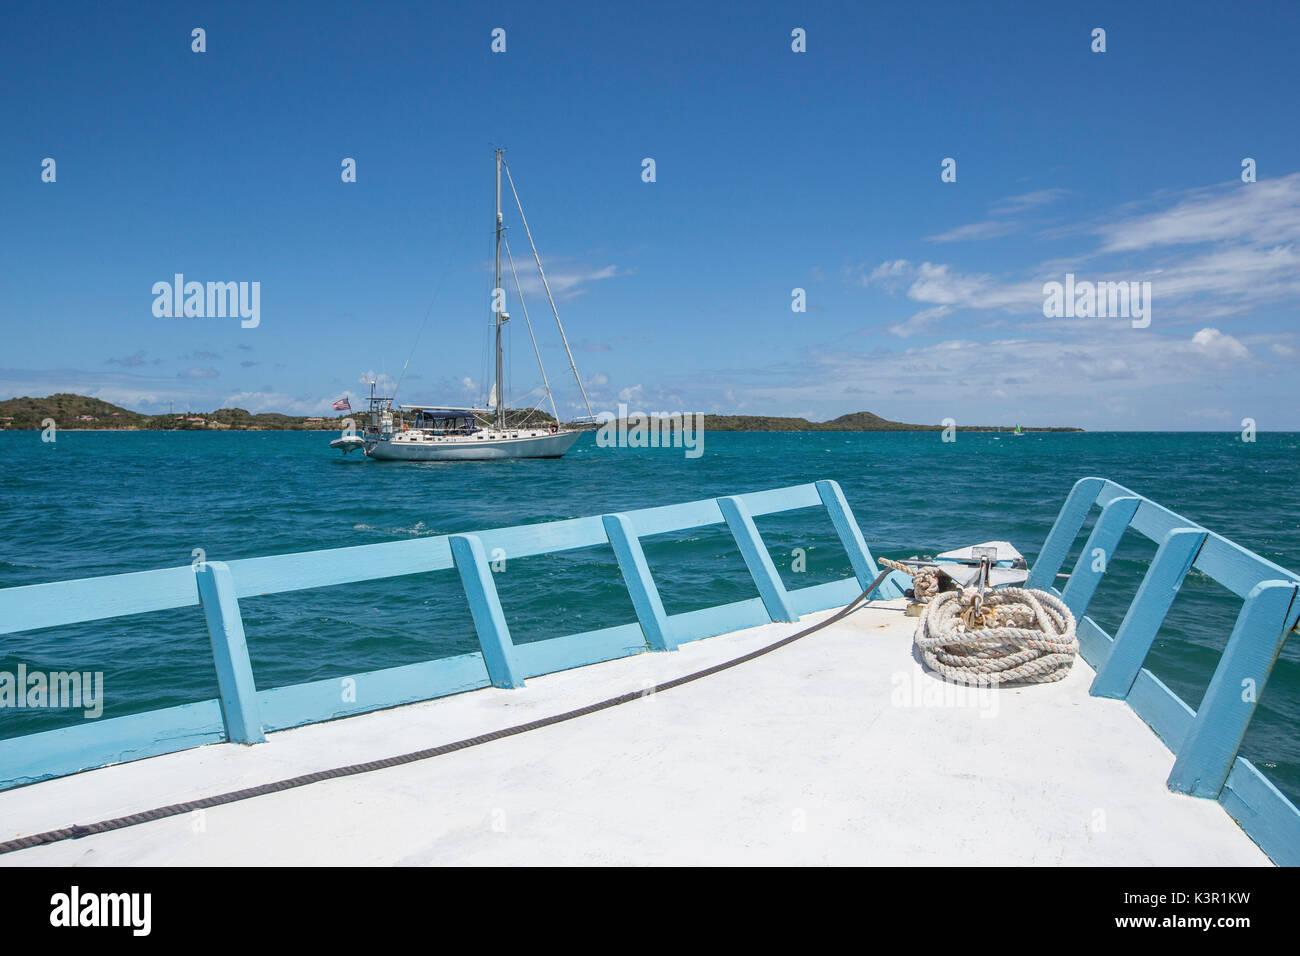 Veleros y barcos en las aguas color turquesa del Mar Caribe Isla verde isla de sotavento de Antigua y Barbuda Antillas Foto de stock